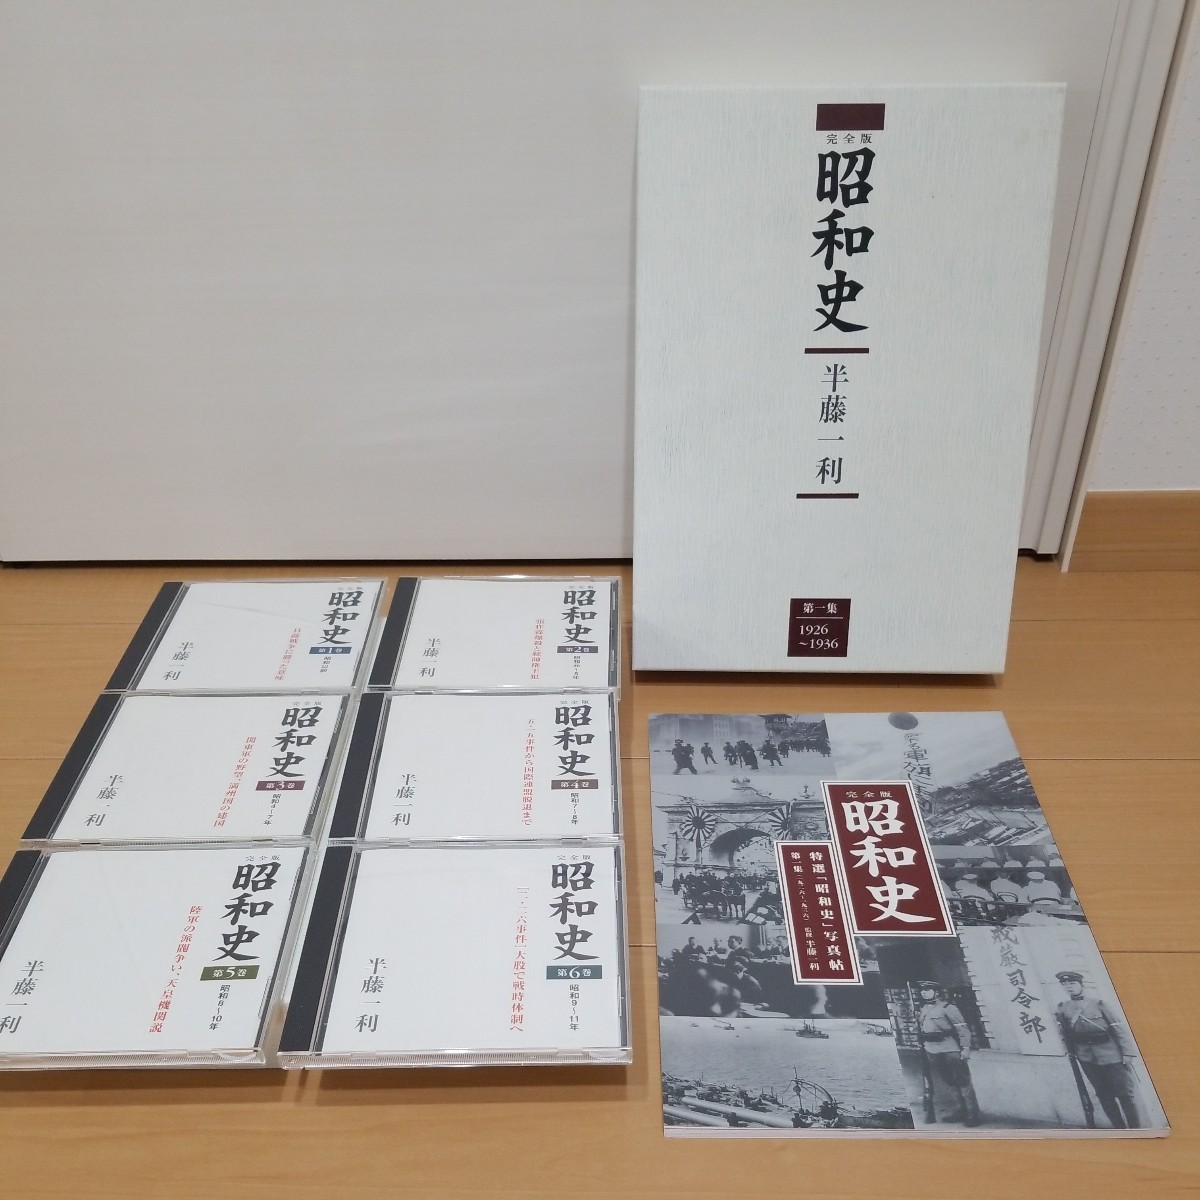  совершенно версия Showa история первый сборник второй сборник третий сборник половина глициния один выгода CD18 шт. комплект 